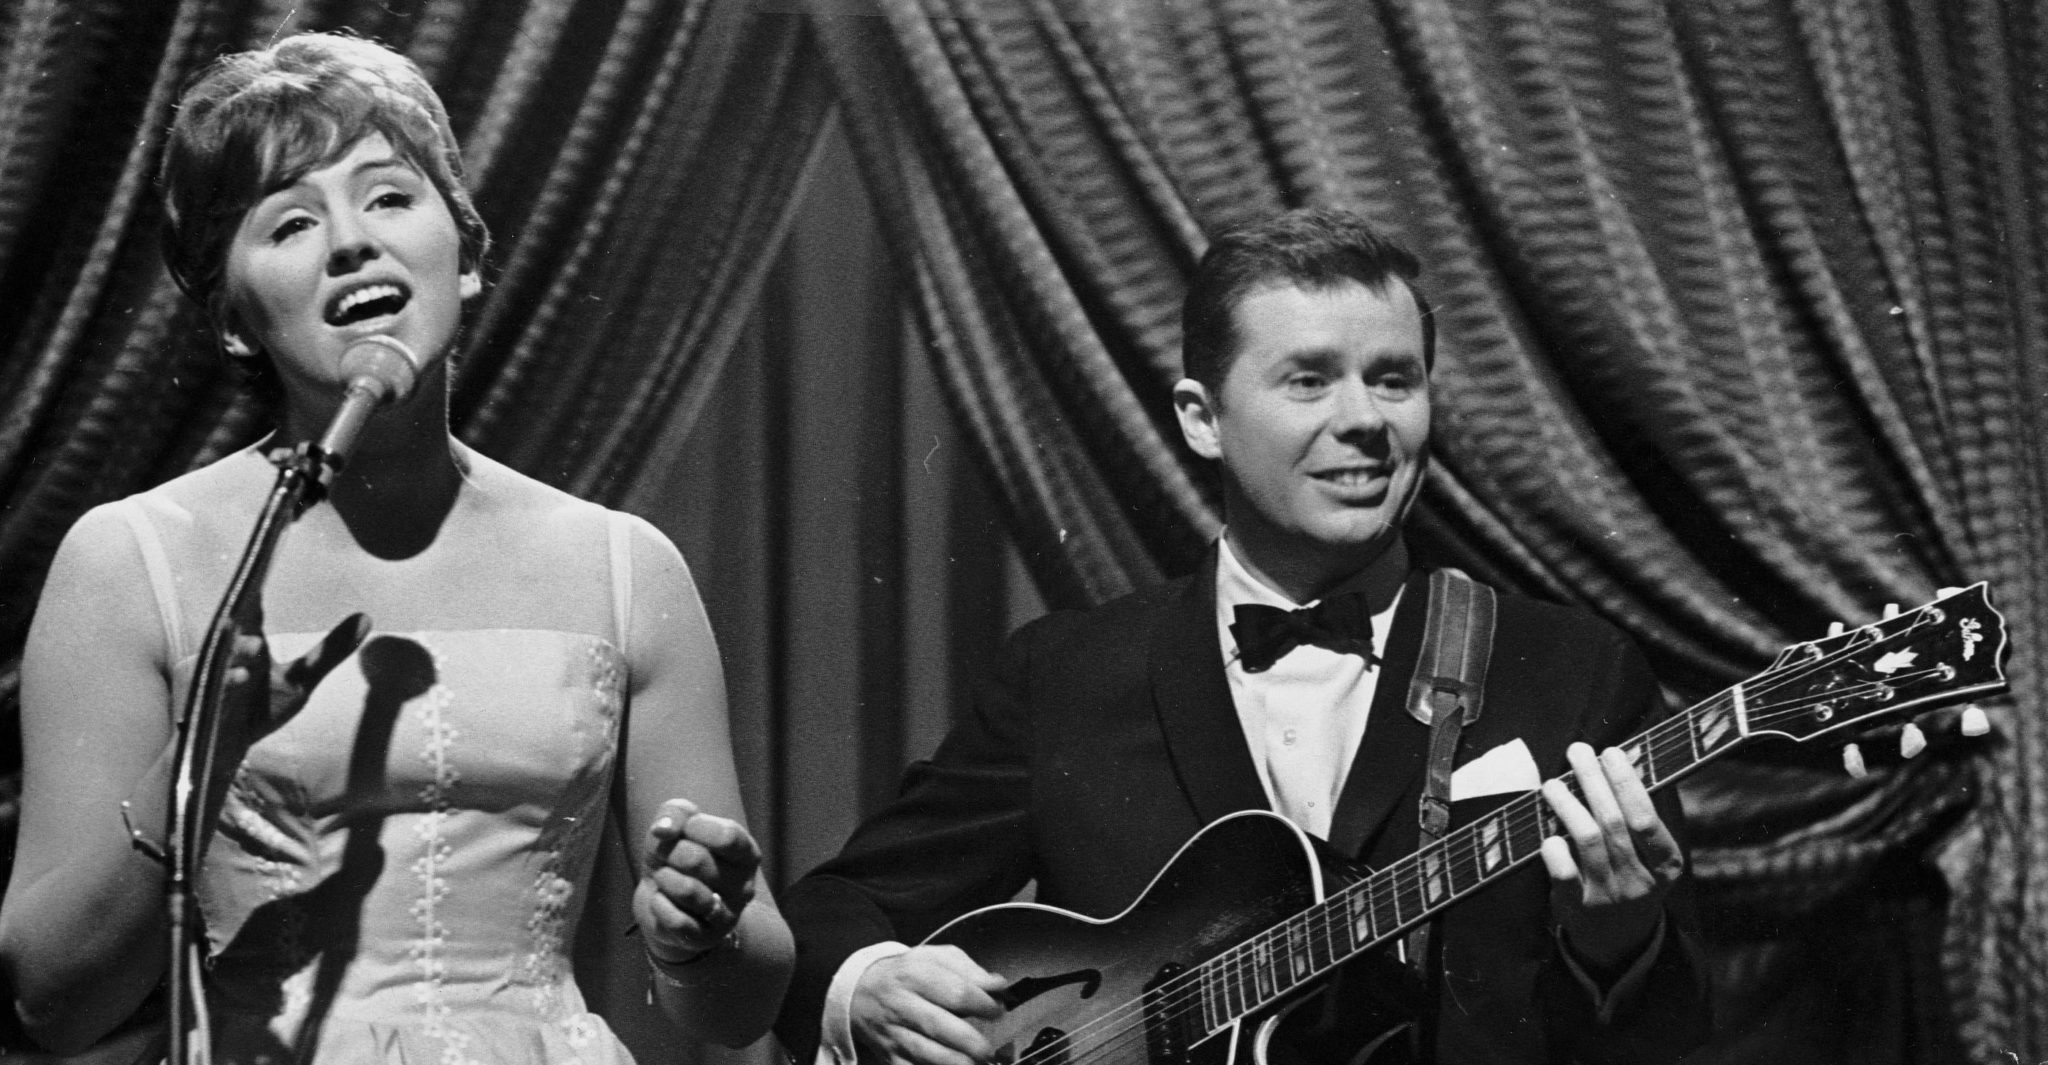 Eurovision 1963 winner Jørgen Ingmann passes away